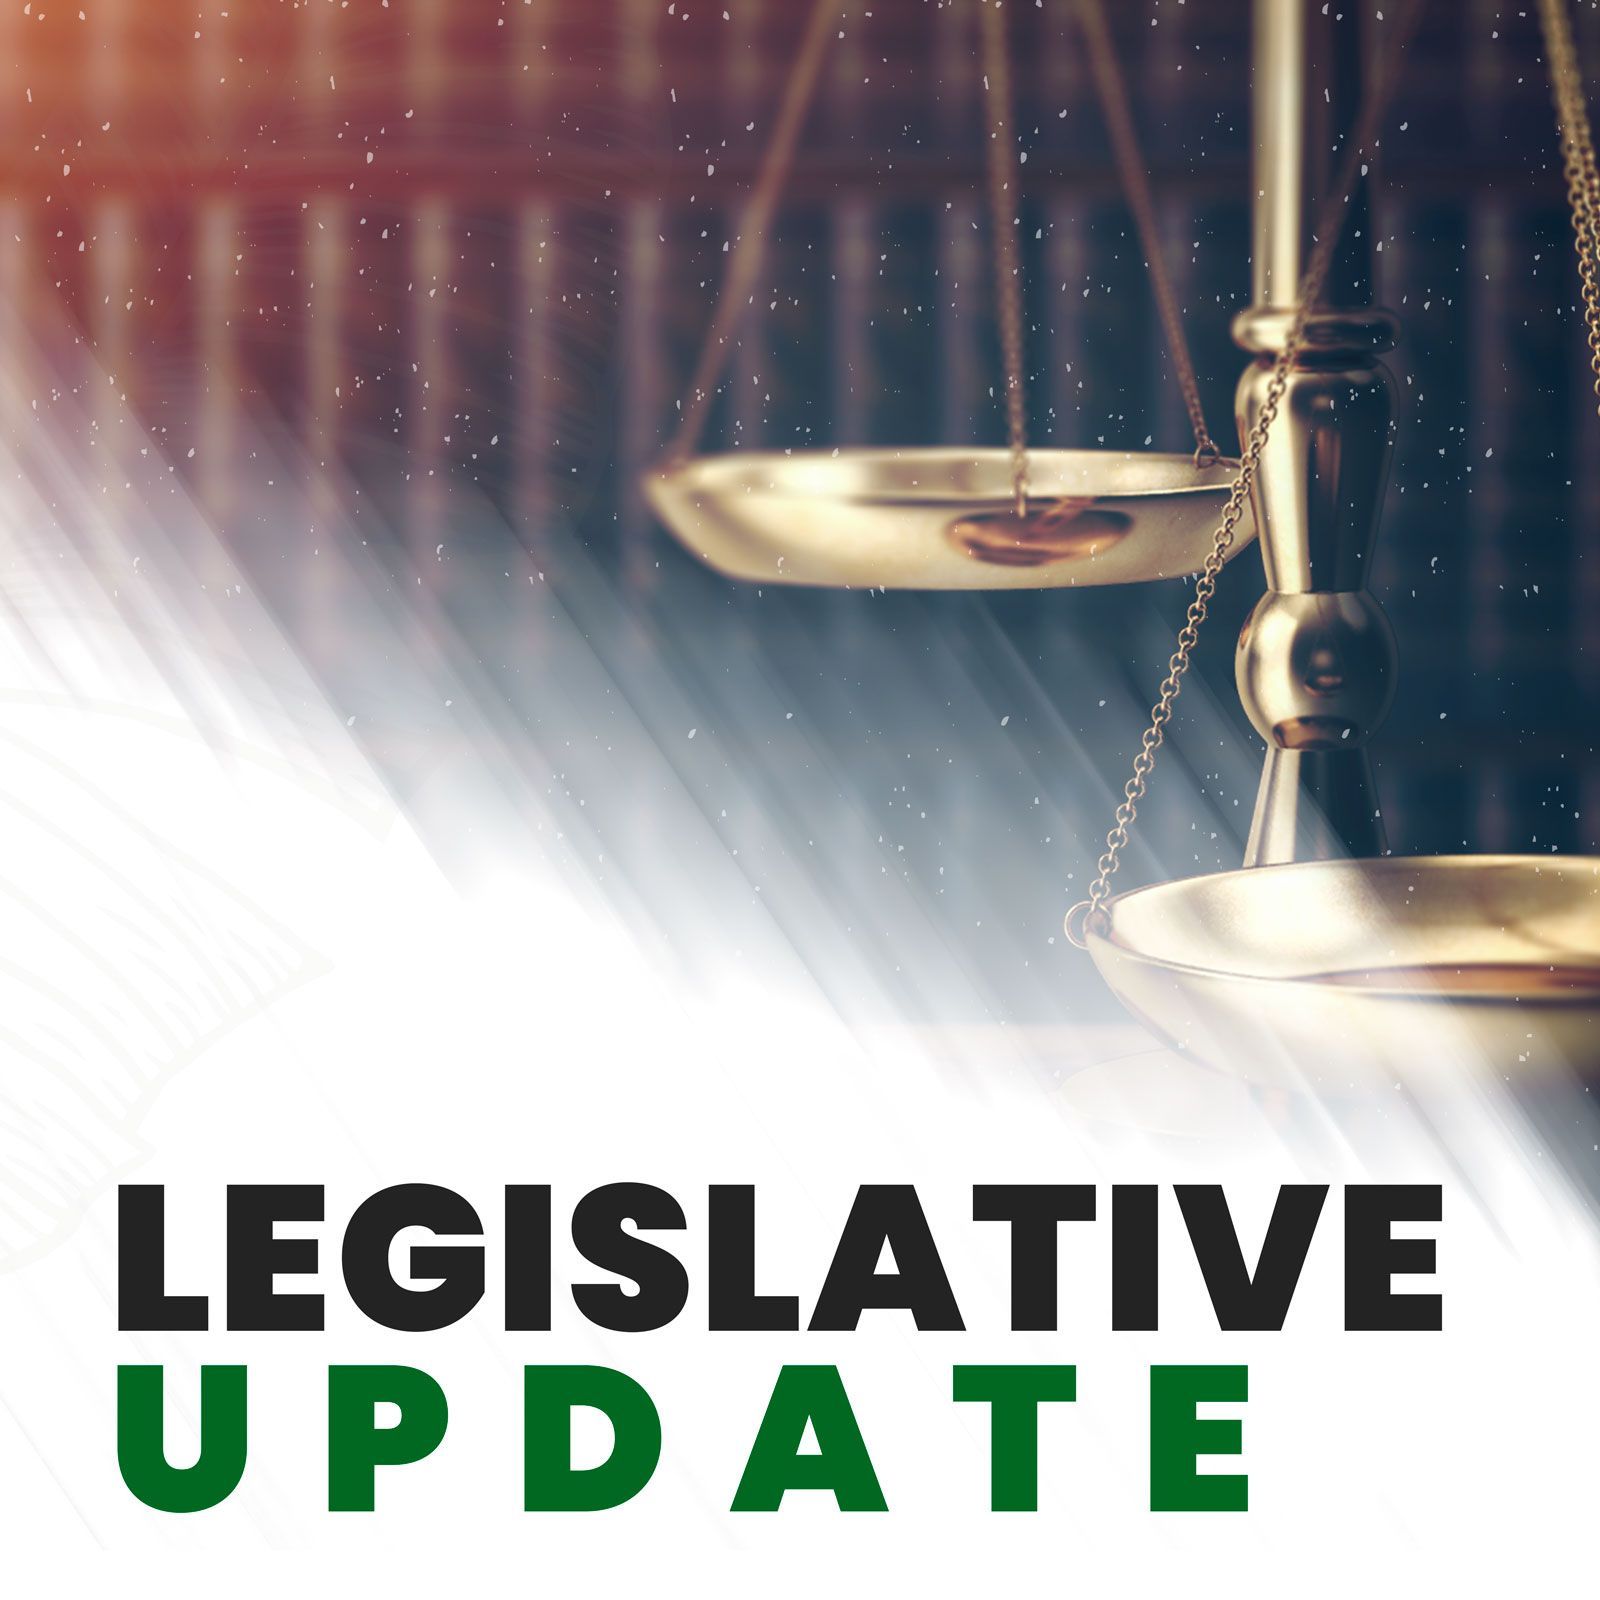 Legislative Update for March 6, 2022